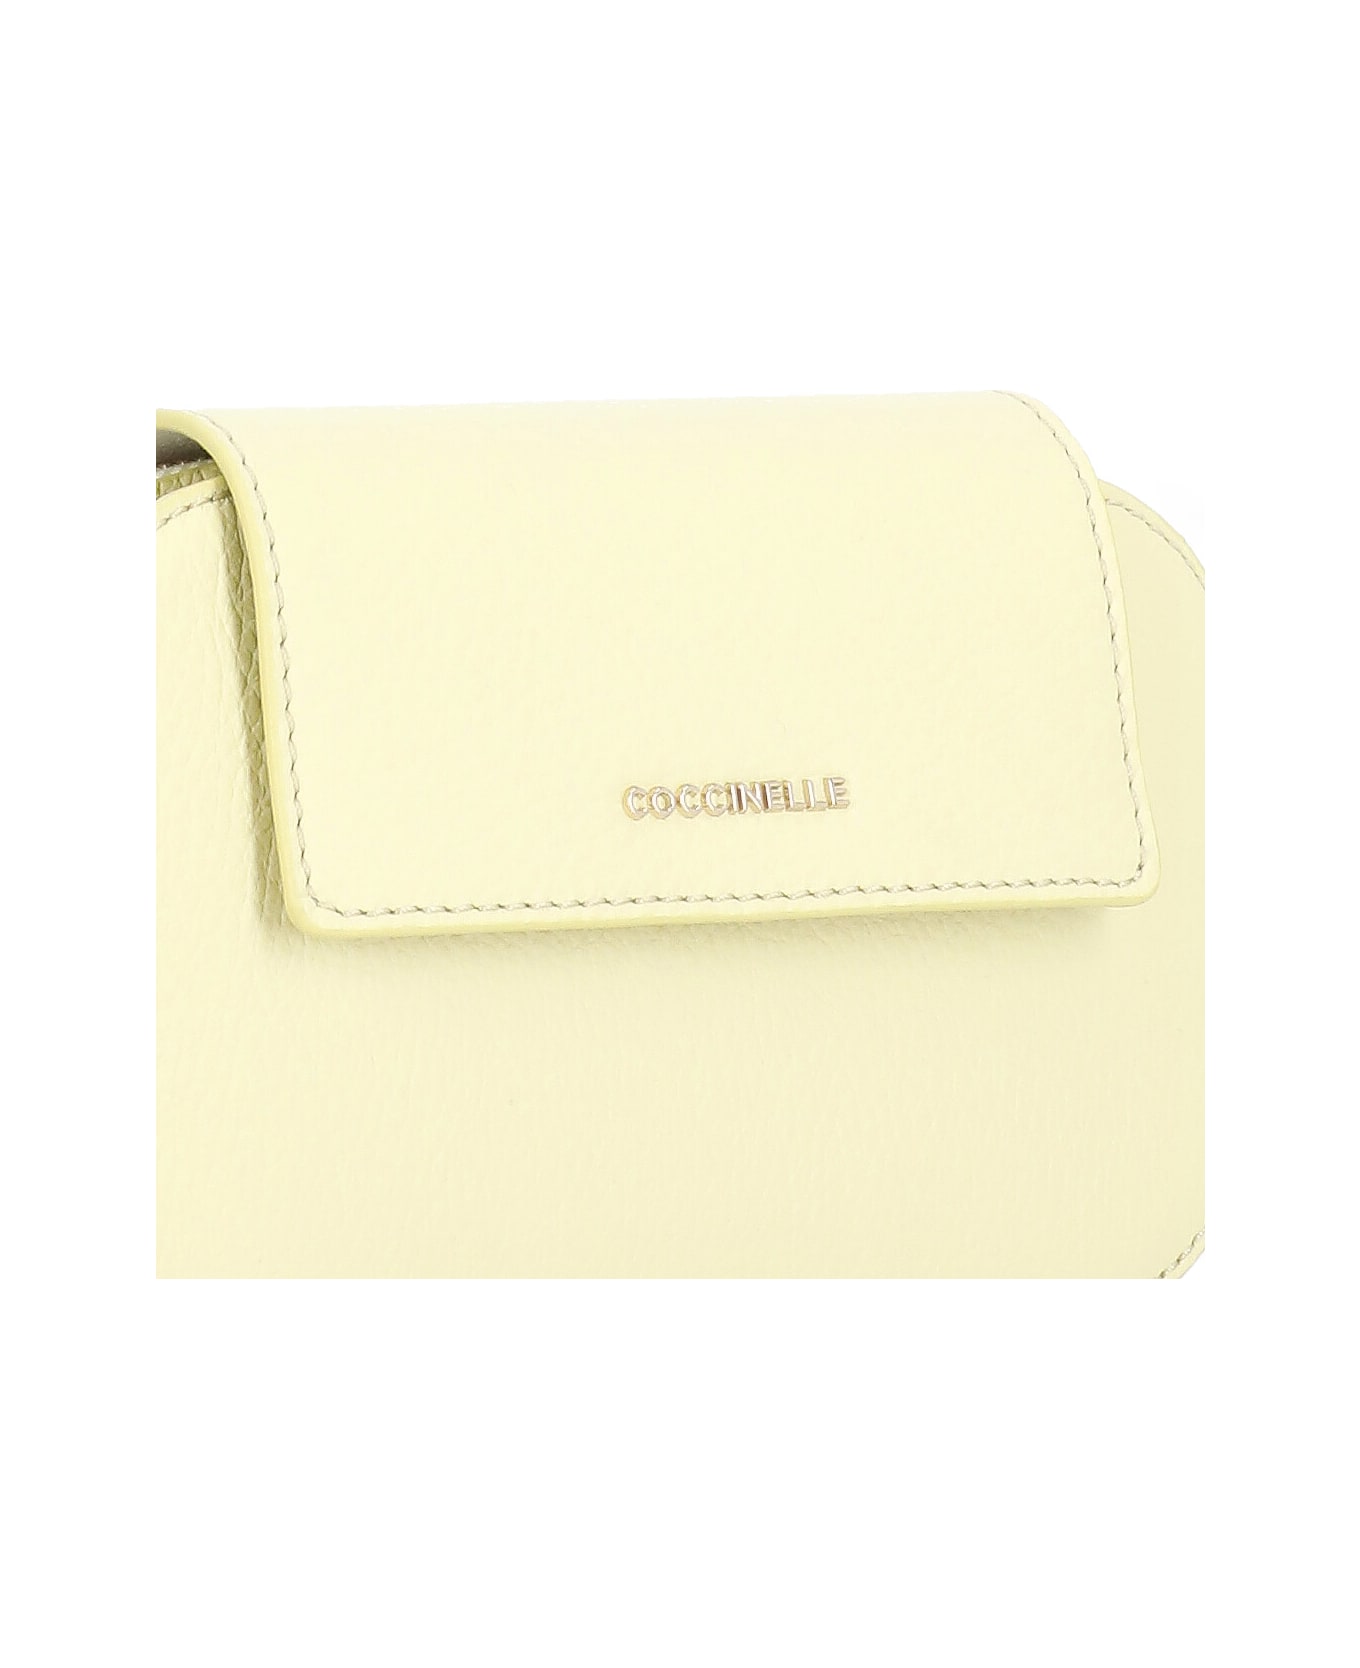 Coccinelle Faint Shoulder Bag - Yellow